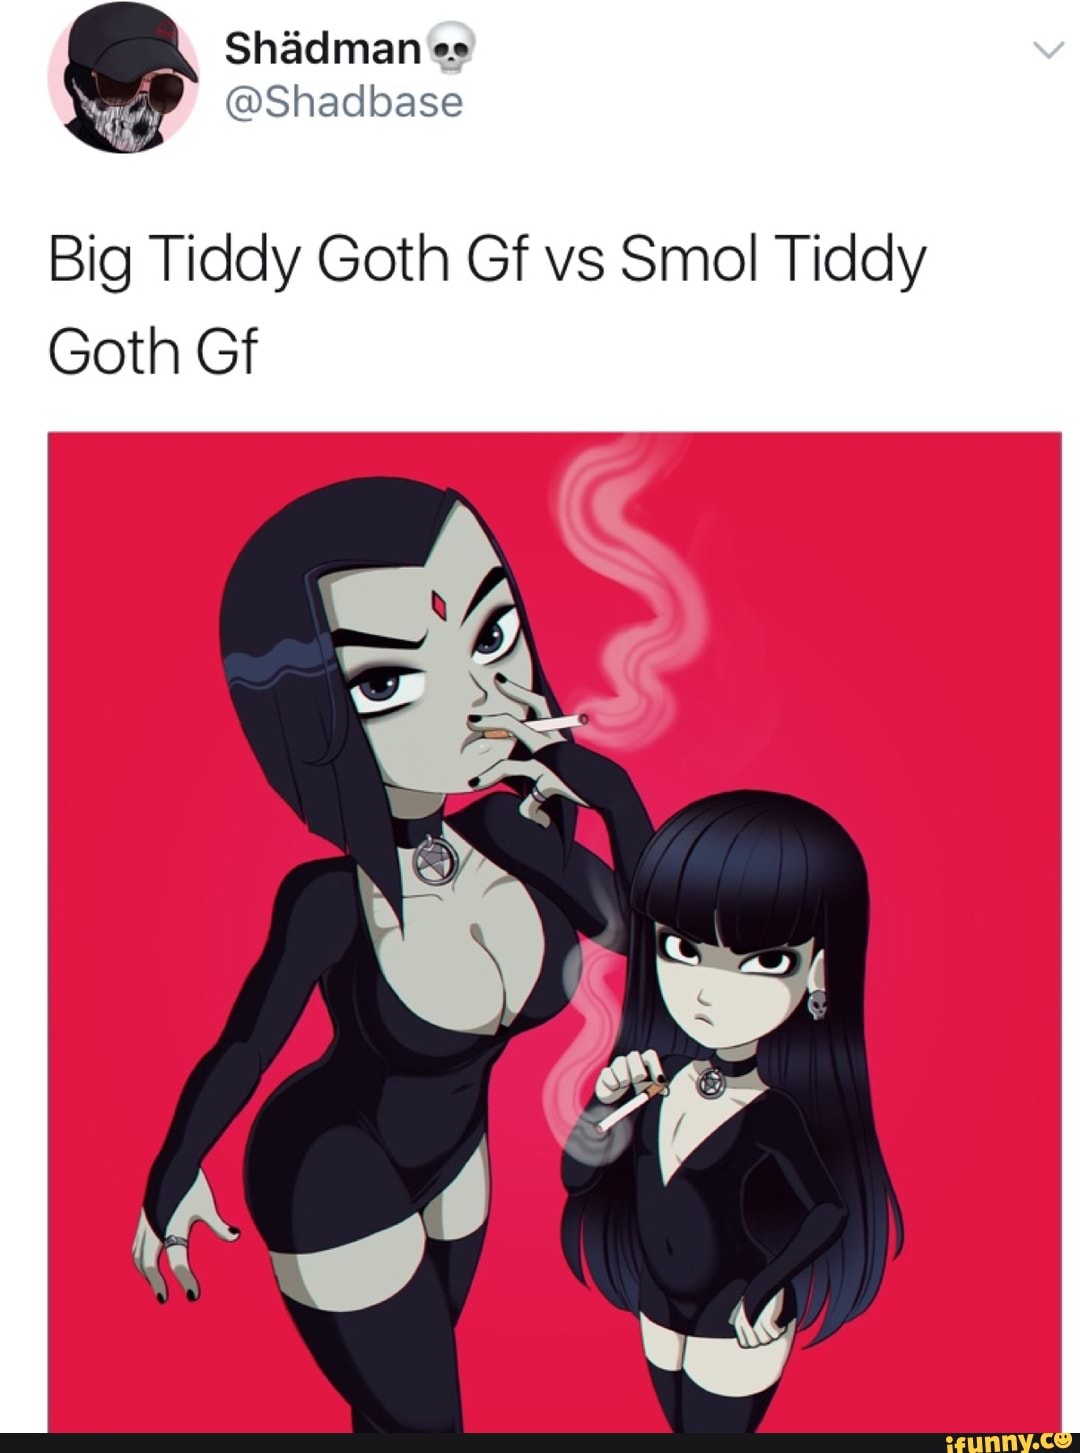 Tiddy goth big Goth GF